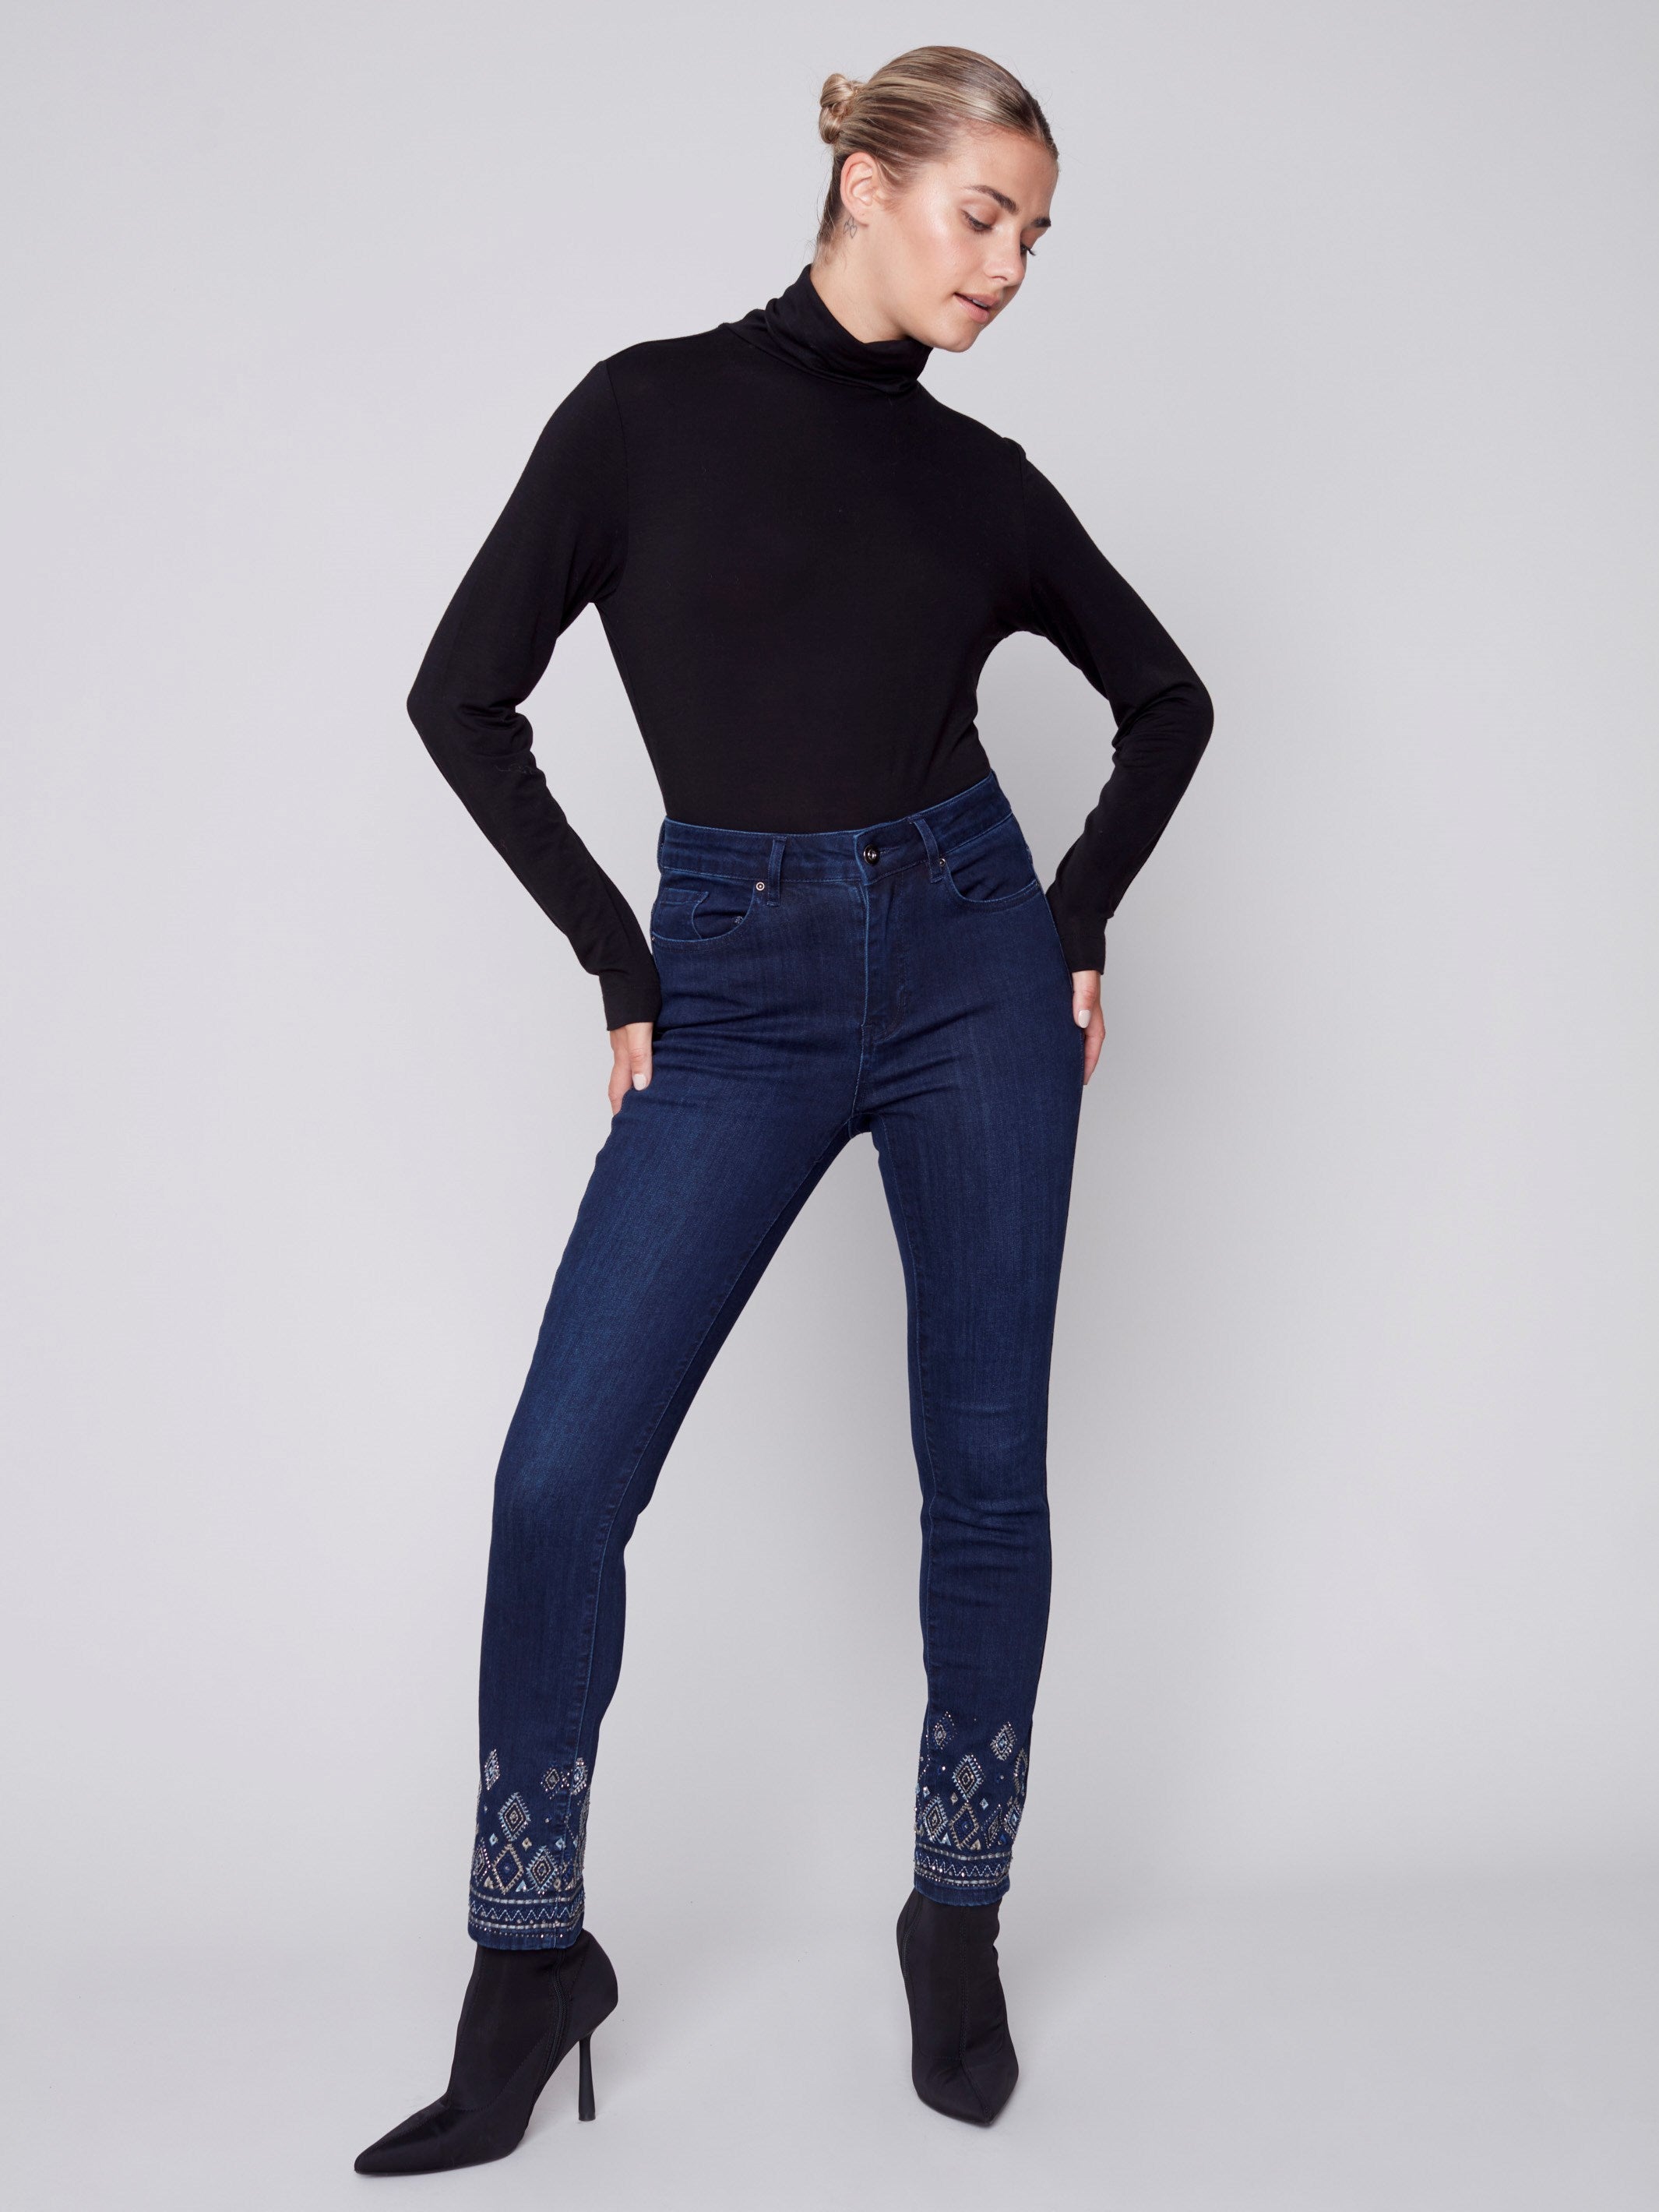 Jeans à jambe étroite avec broderie géométrique - Bleu noir